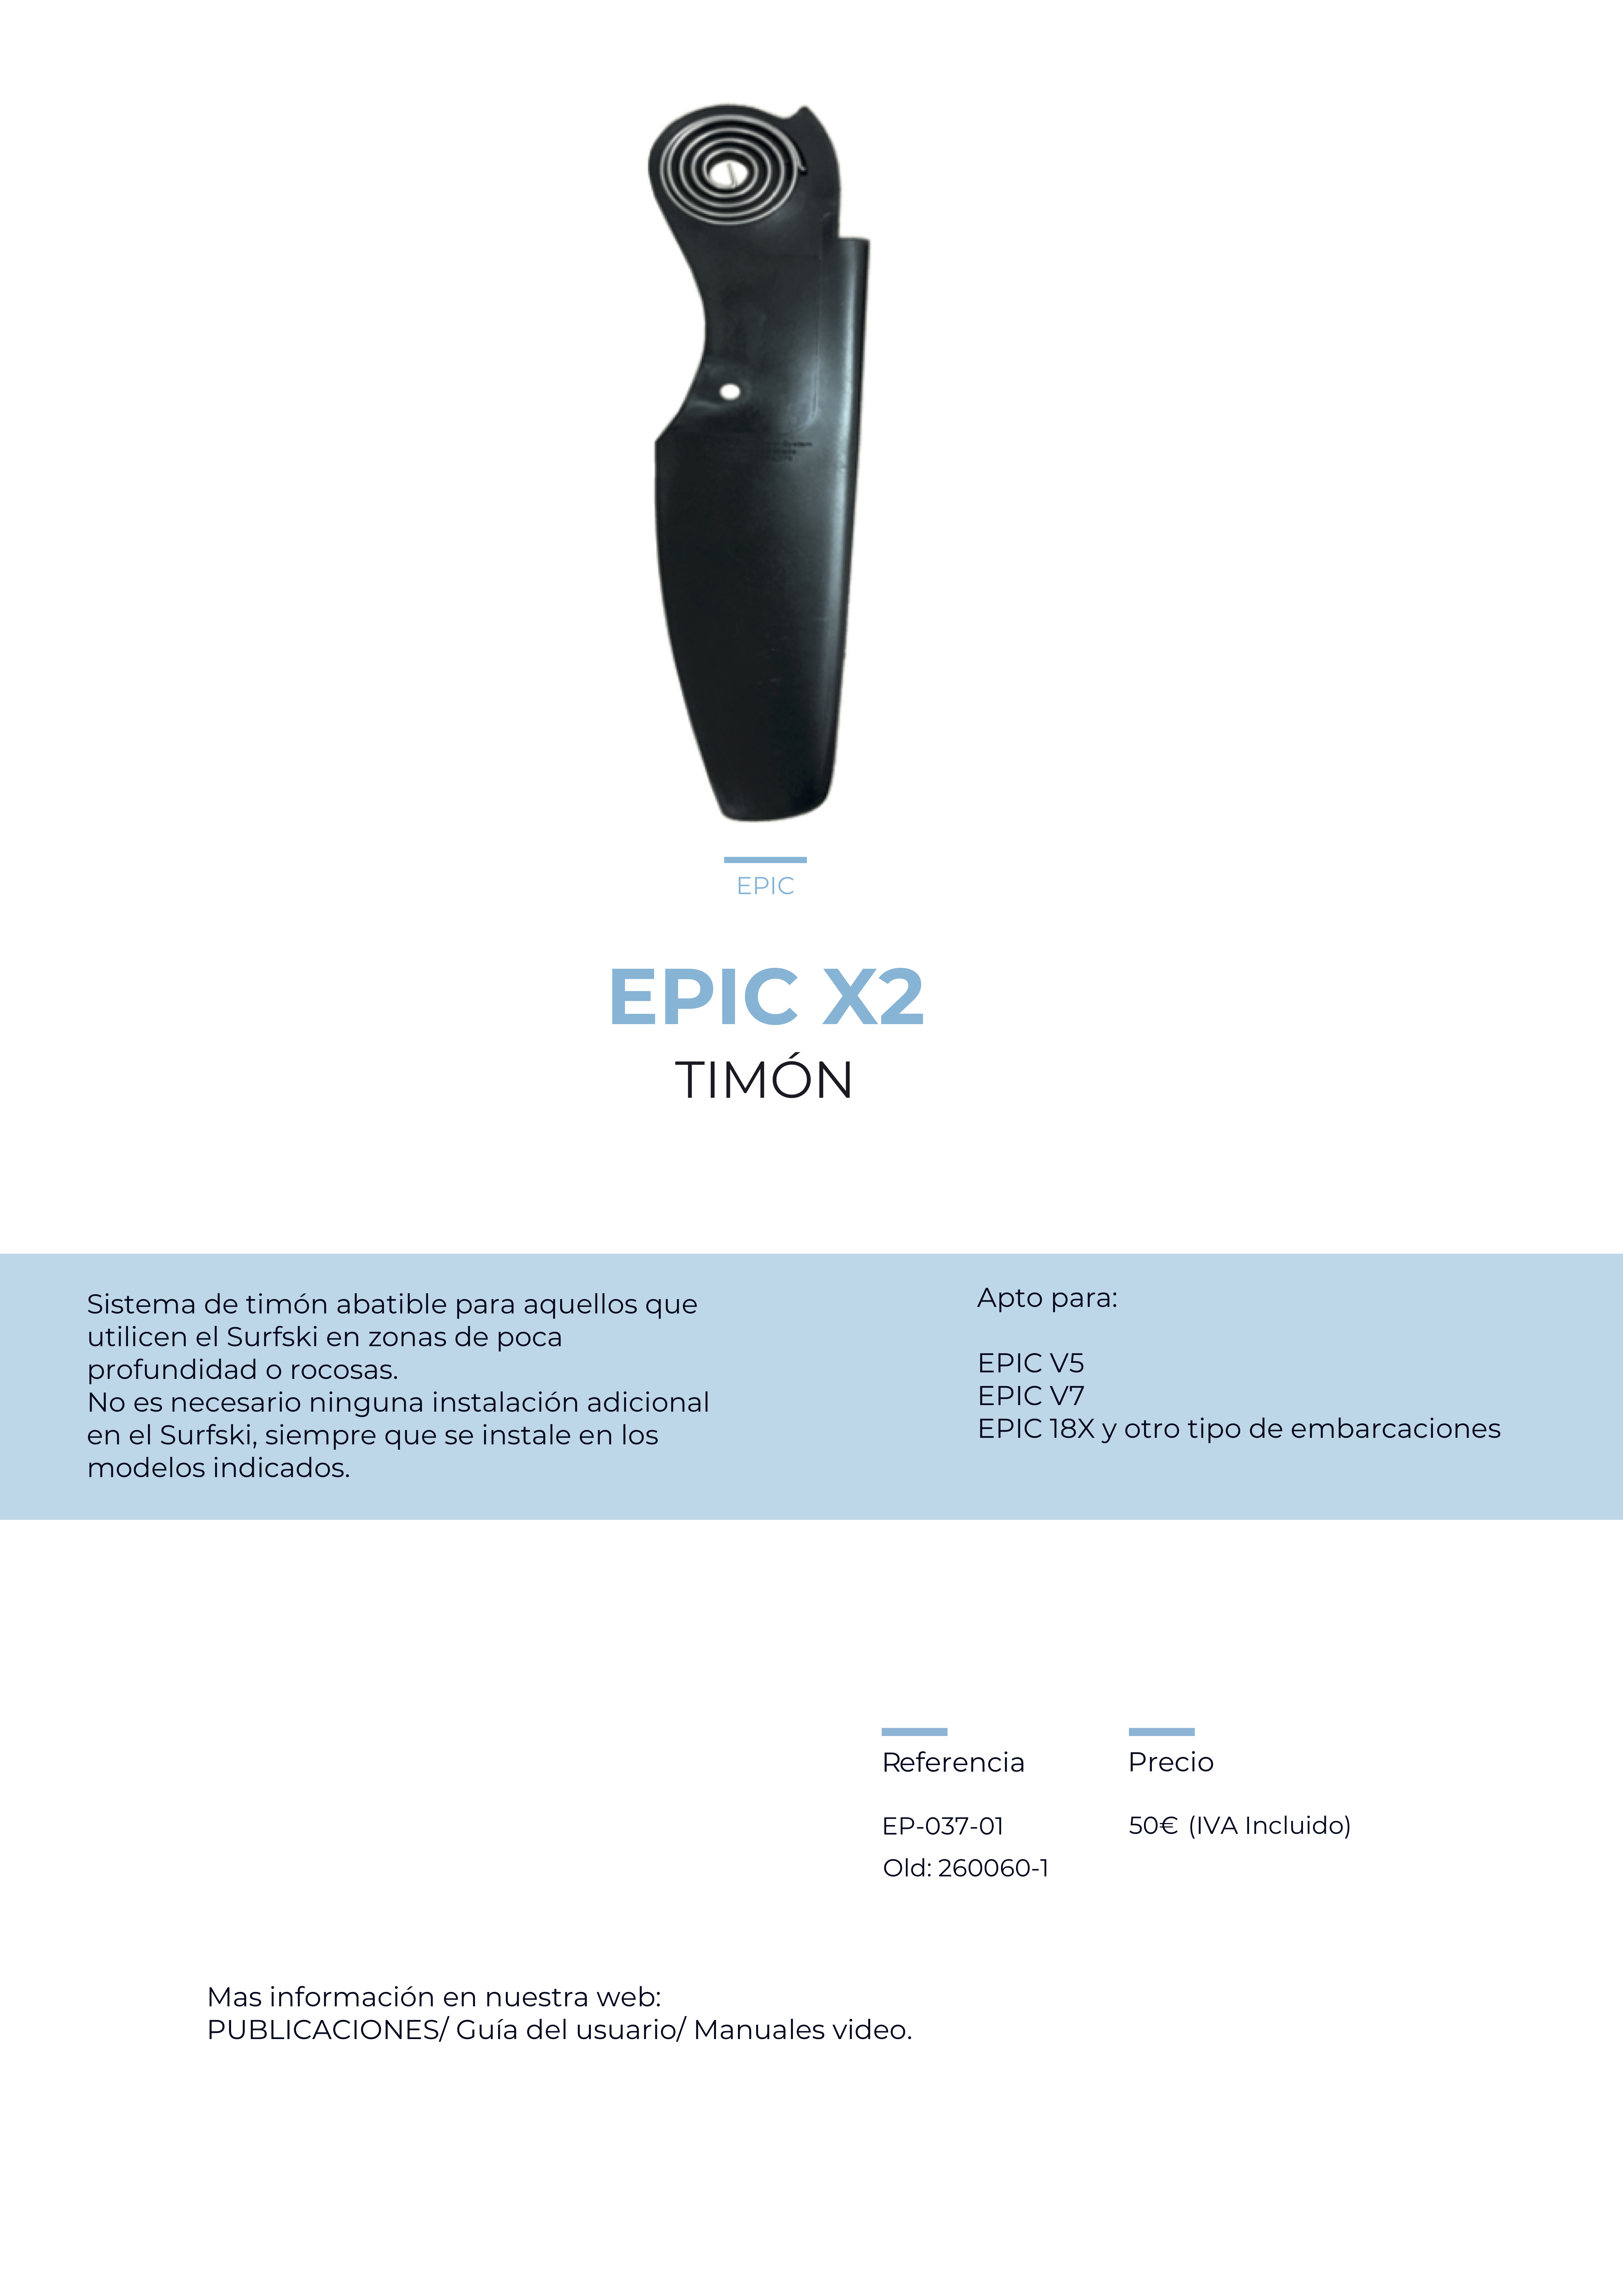 epic X2 timon